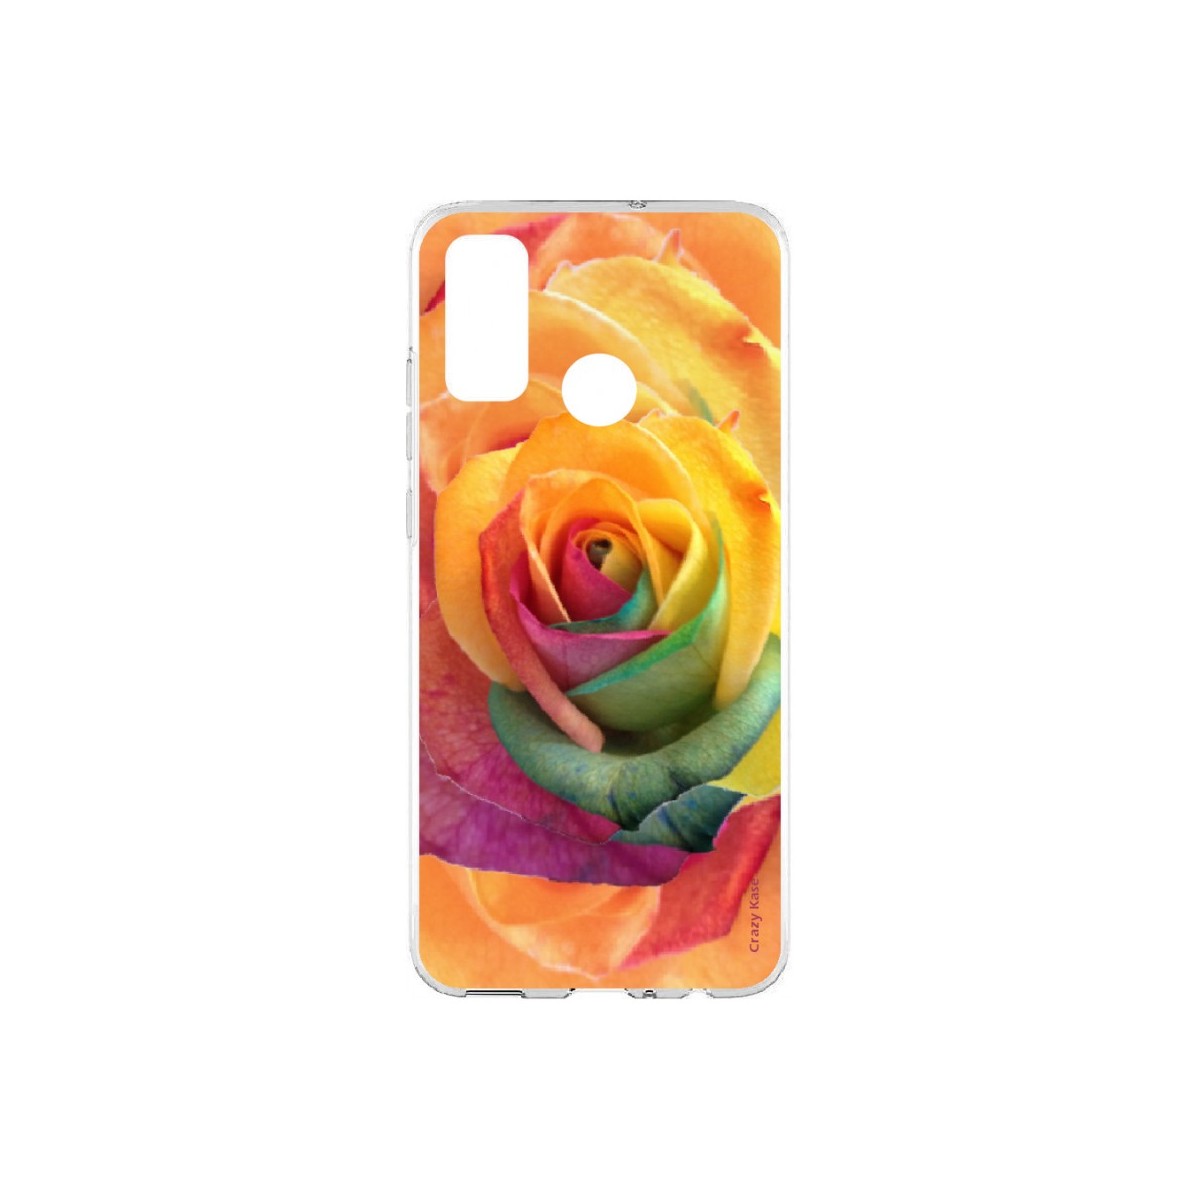 Coque Huawei P Smart 2020 souple Rose fleur colorée Crazy Kase